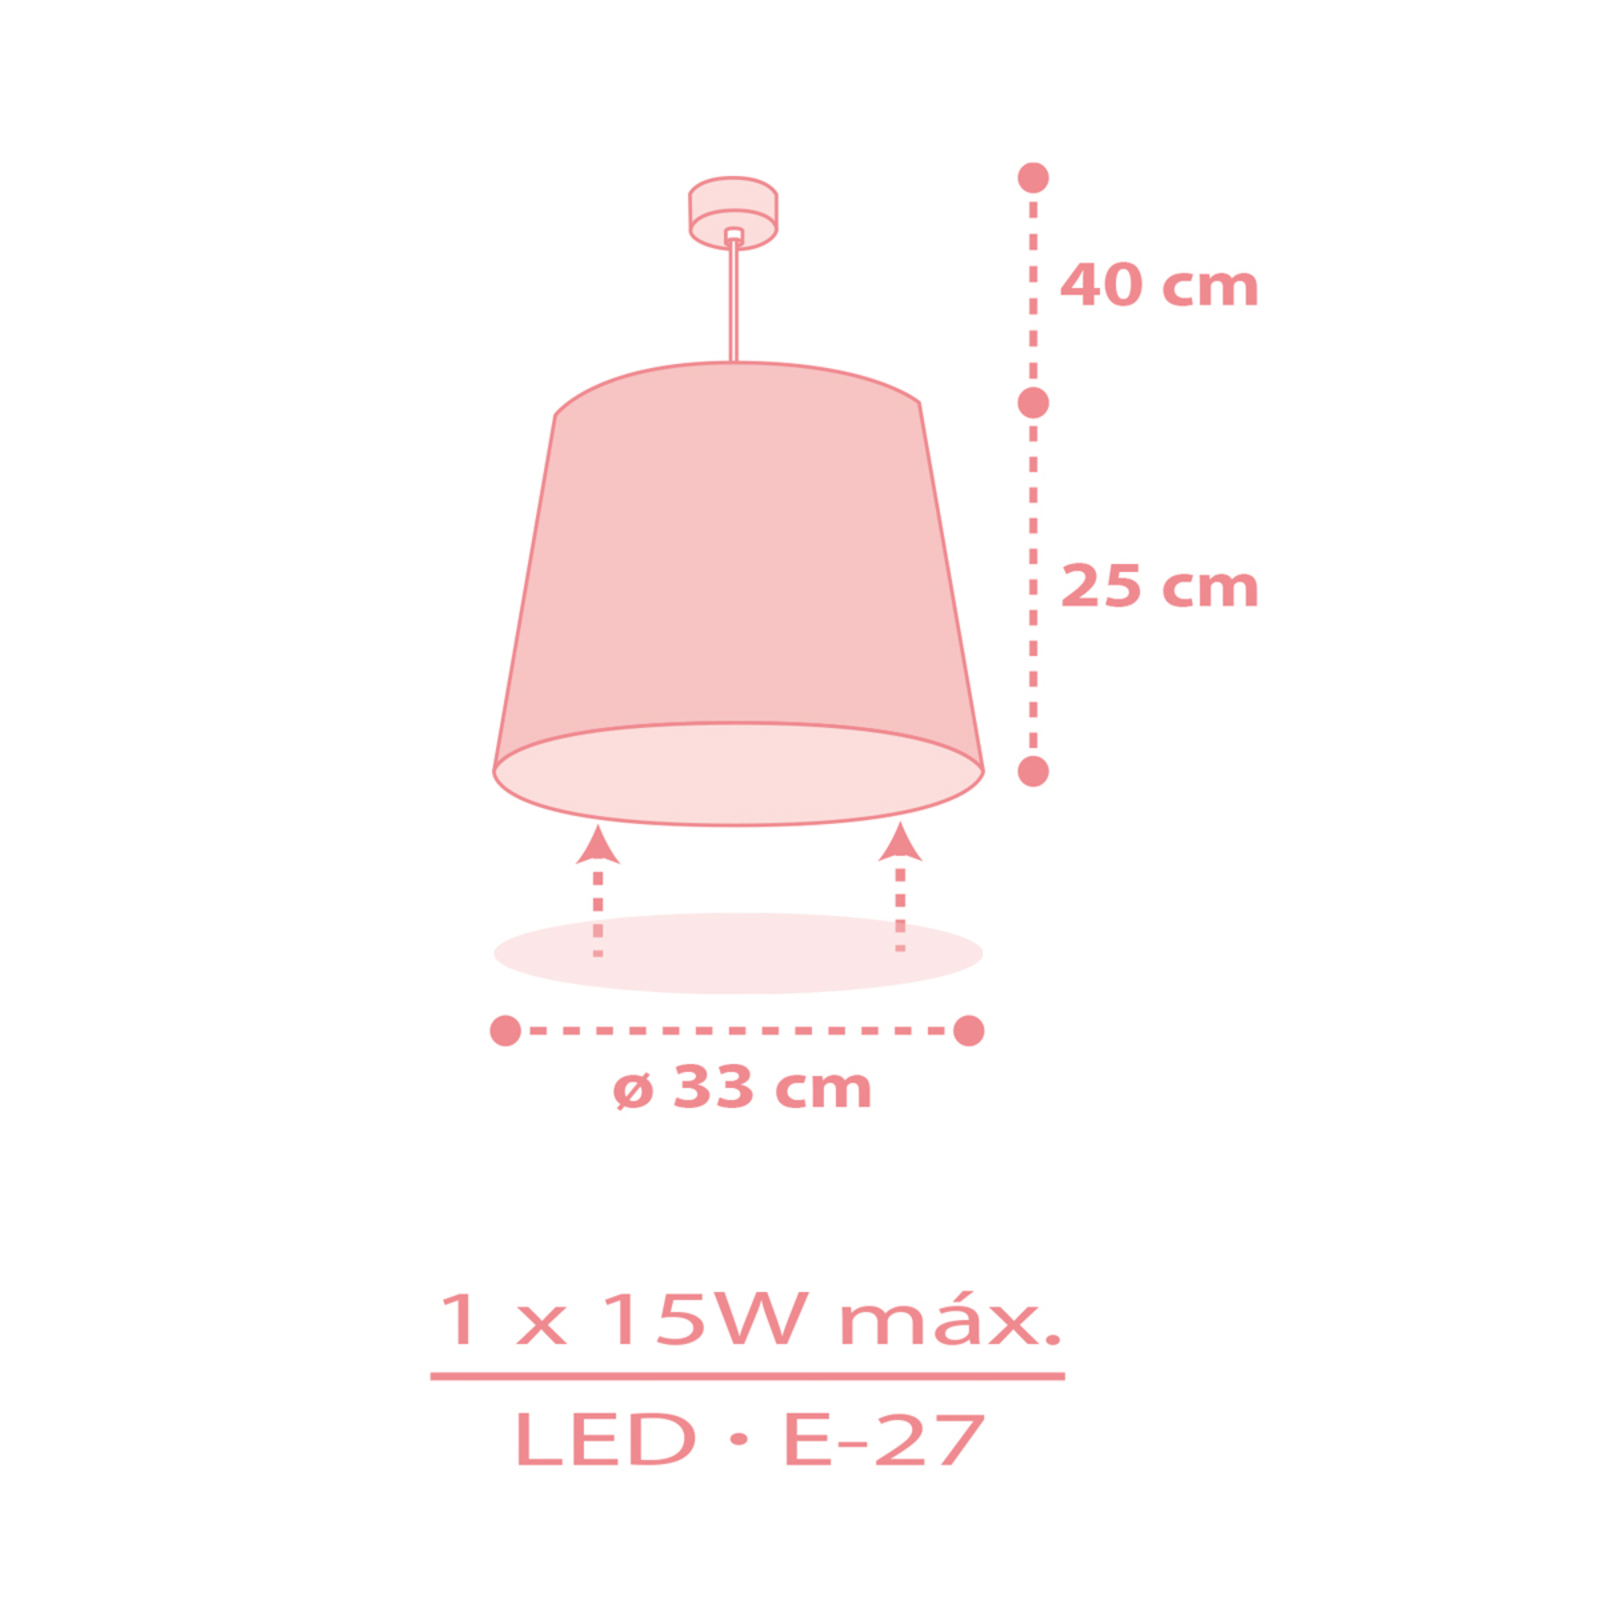 Dalber Star Light hanglamp voor kinderen roze